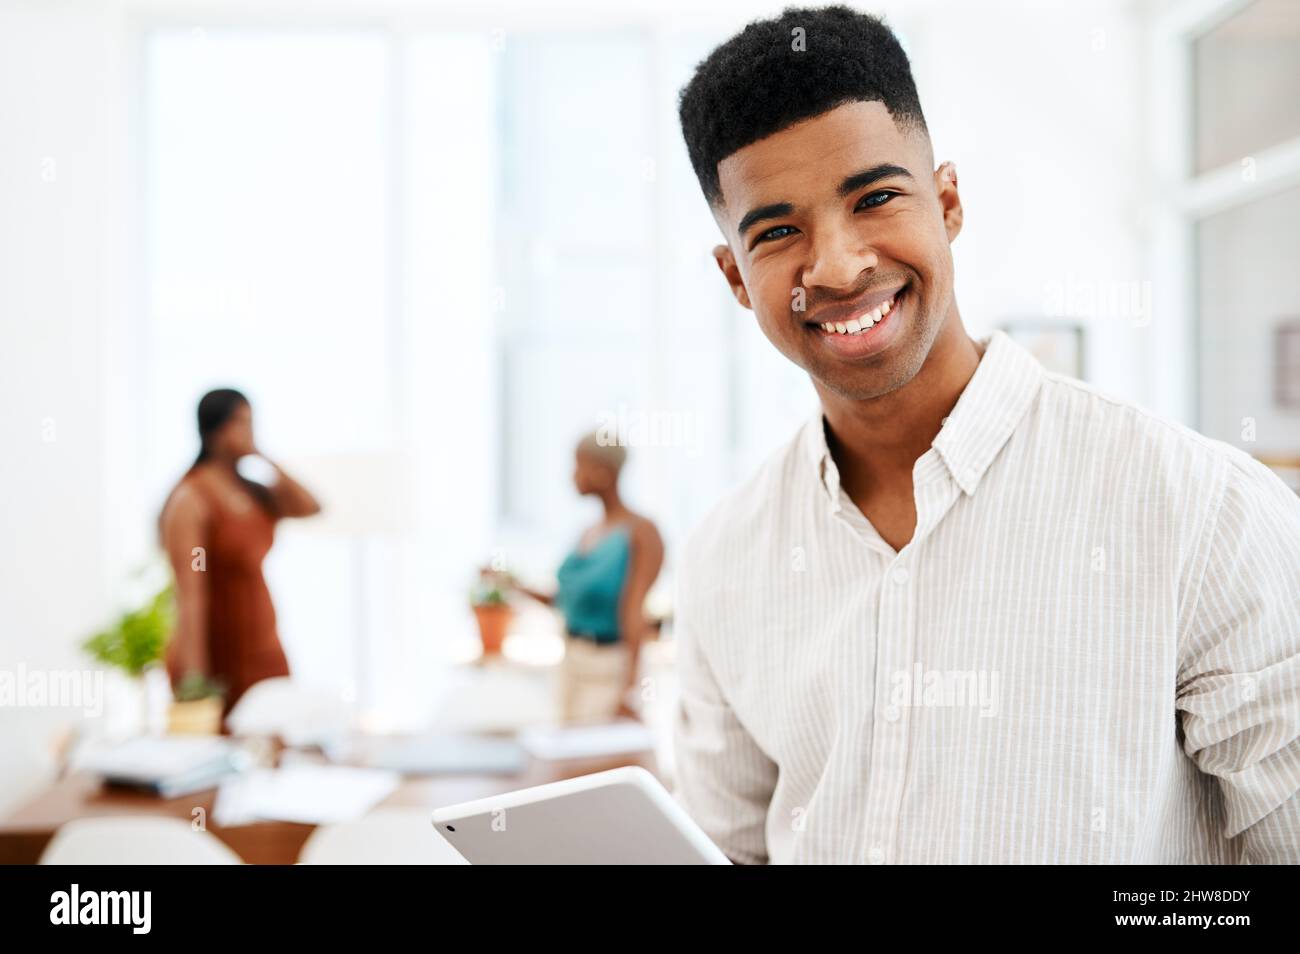 La technologie est aussi innovante que ses conceptions. Portrait d'un jeune homme d'affaires utilisant une tablette numérique dans un bureau moderne. Banque D'Images